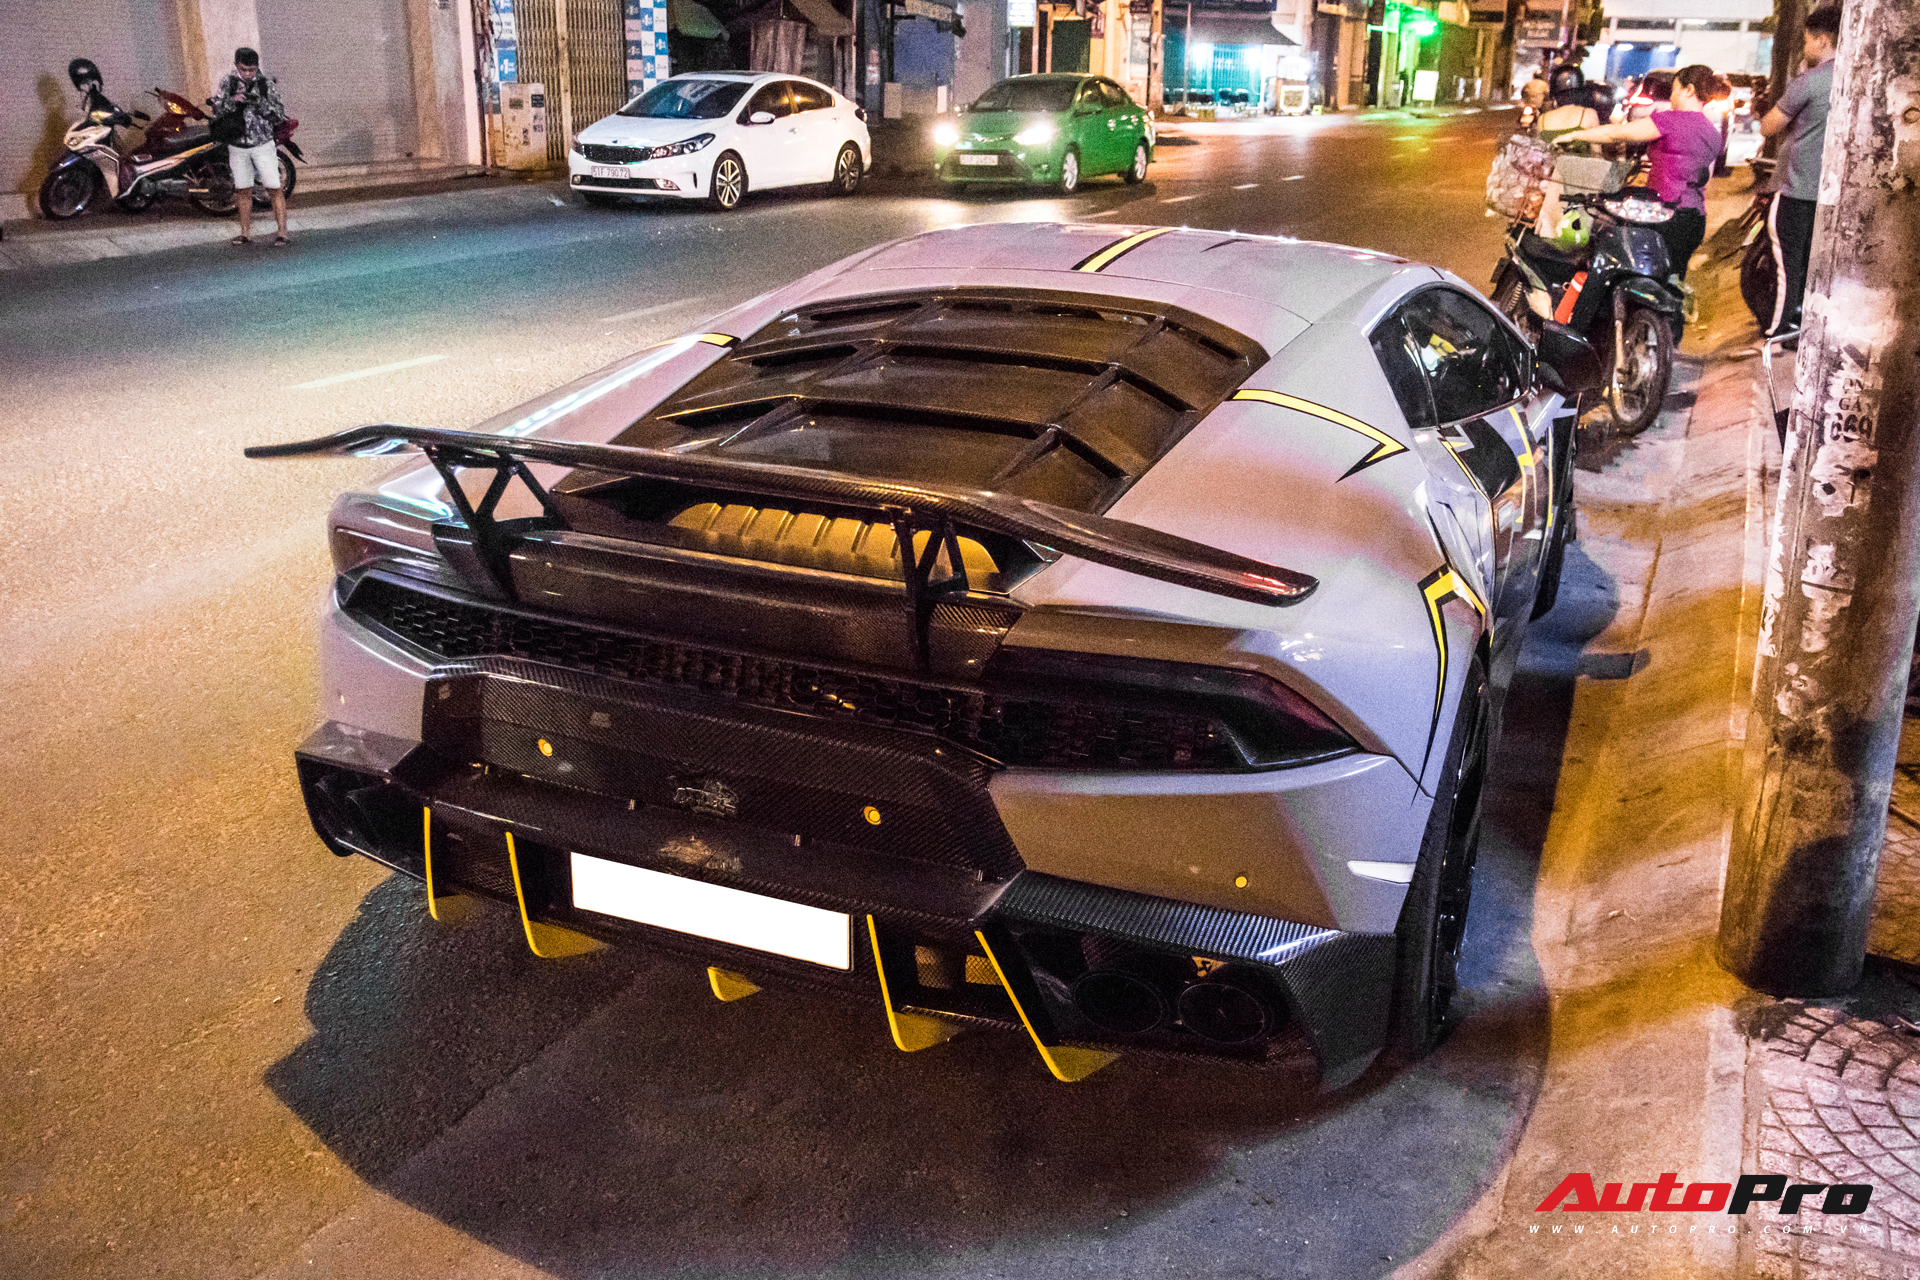 Cận cảnh Lamborghini Huracan độ Mansory lột xác với phong cách rạn nứt tại Sài Gòn - Ảnh 7.